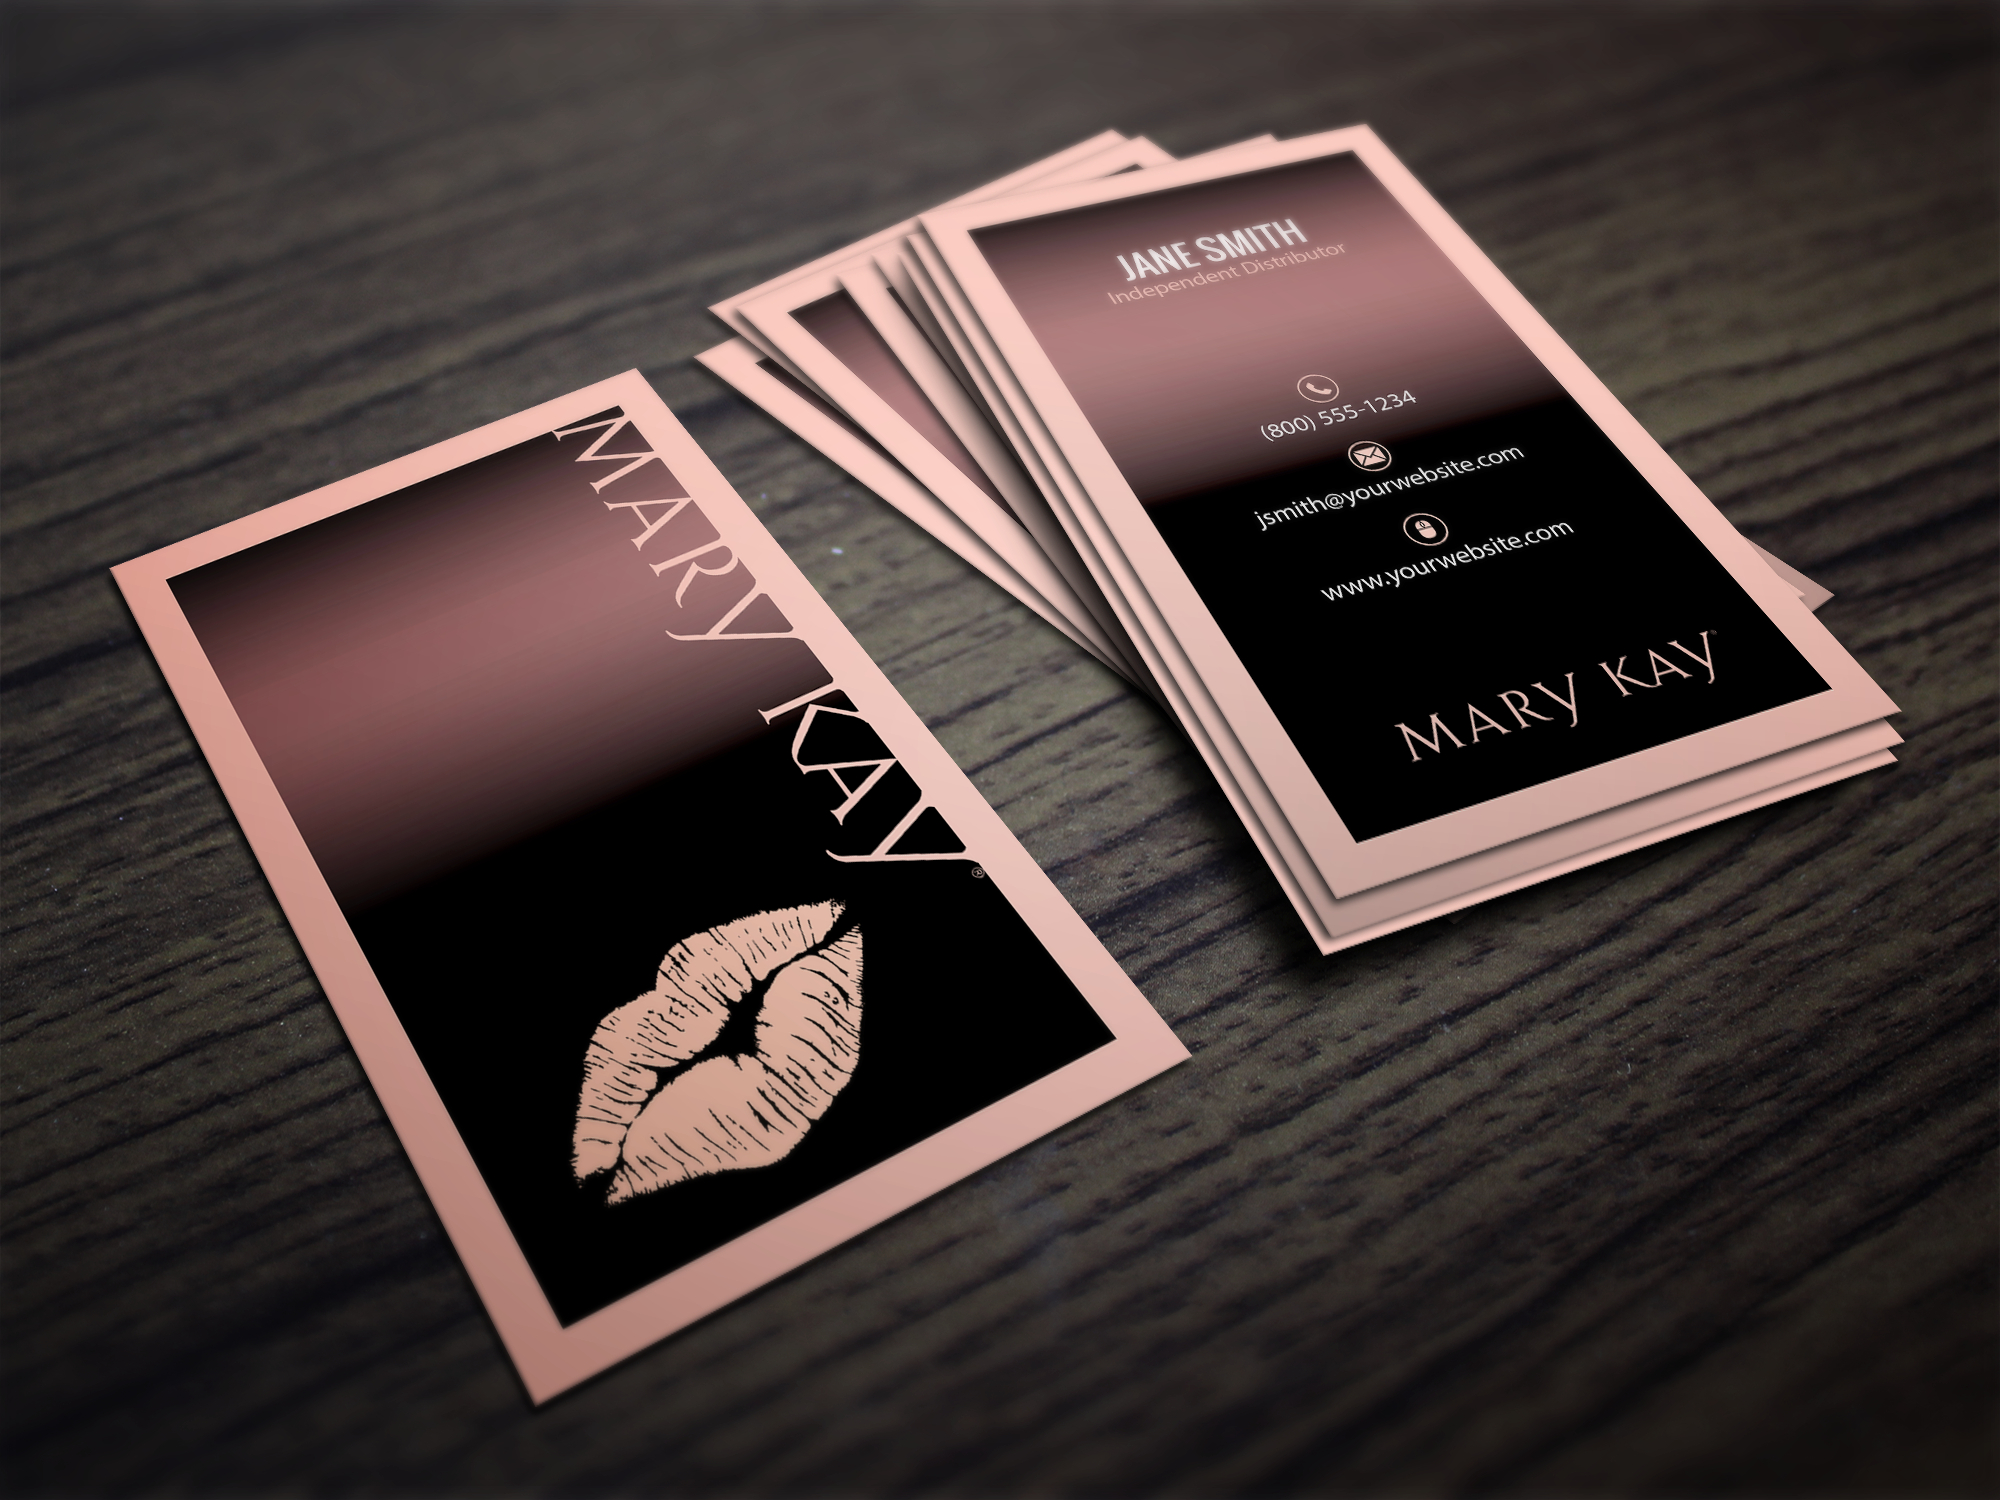 Mary Kay Business Cards | Mary Kay | Mary Kay Party, Mary With Mary Kay Business Cards Templates Free